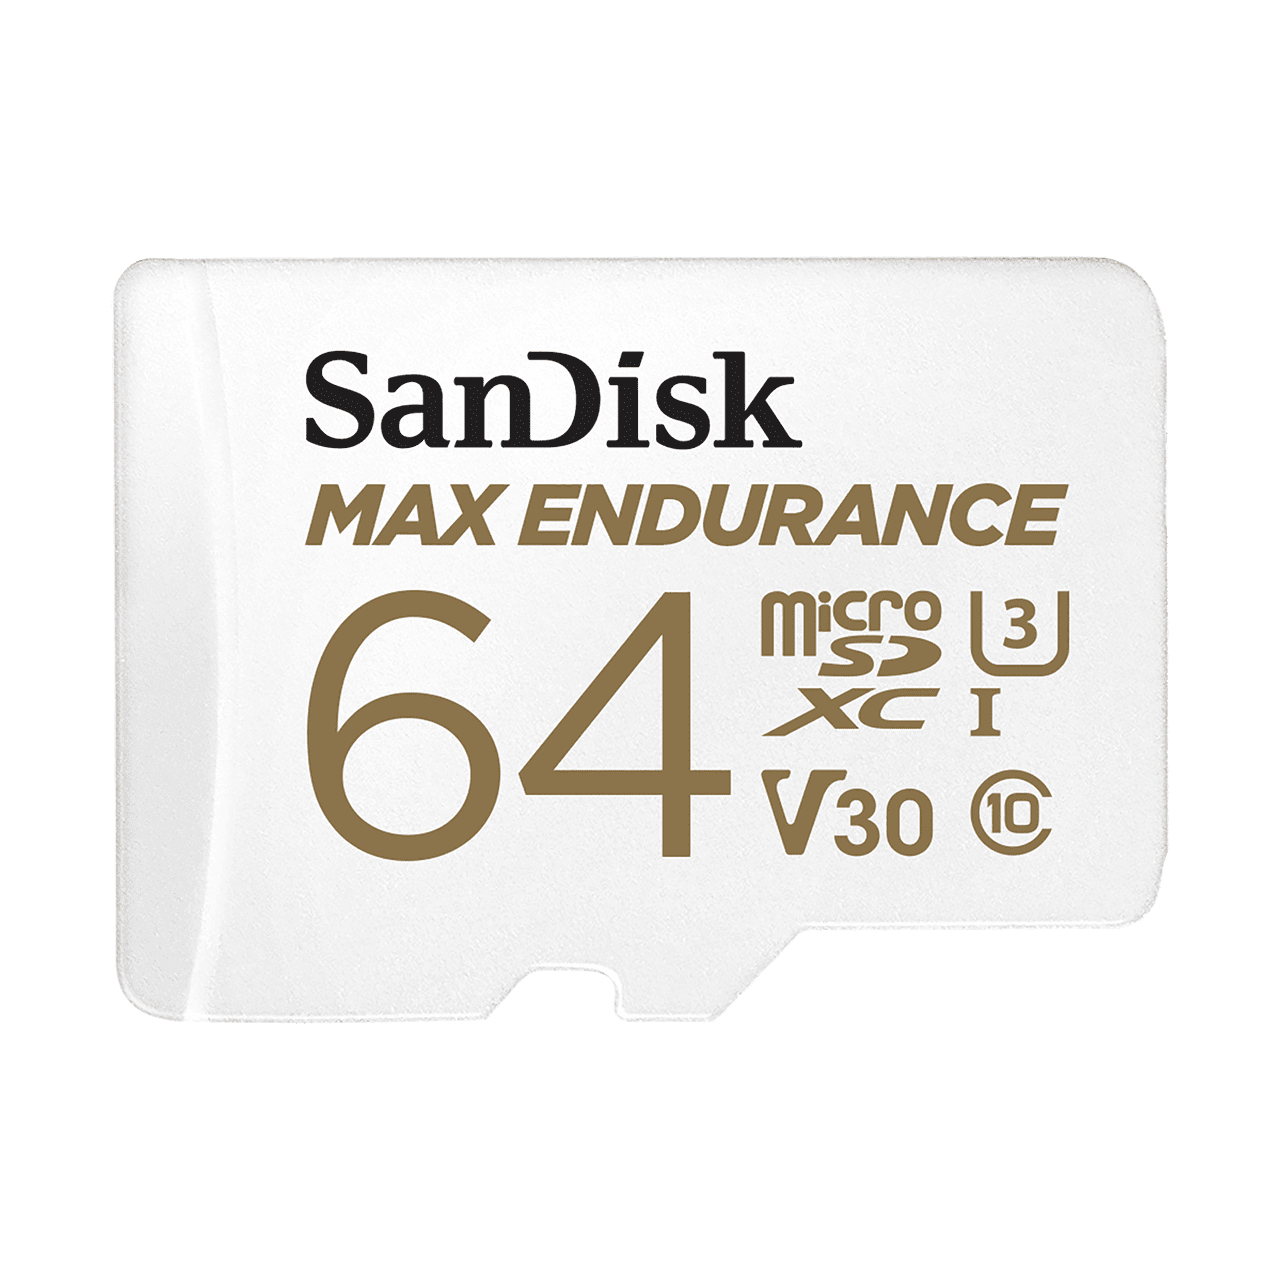 SanDisk Max Endurance 64 GB MicroSDXC UHS-I Klasse 10